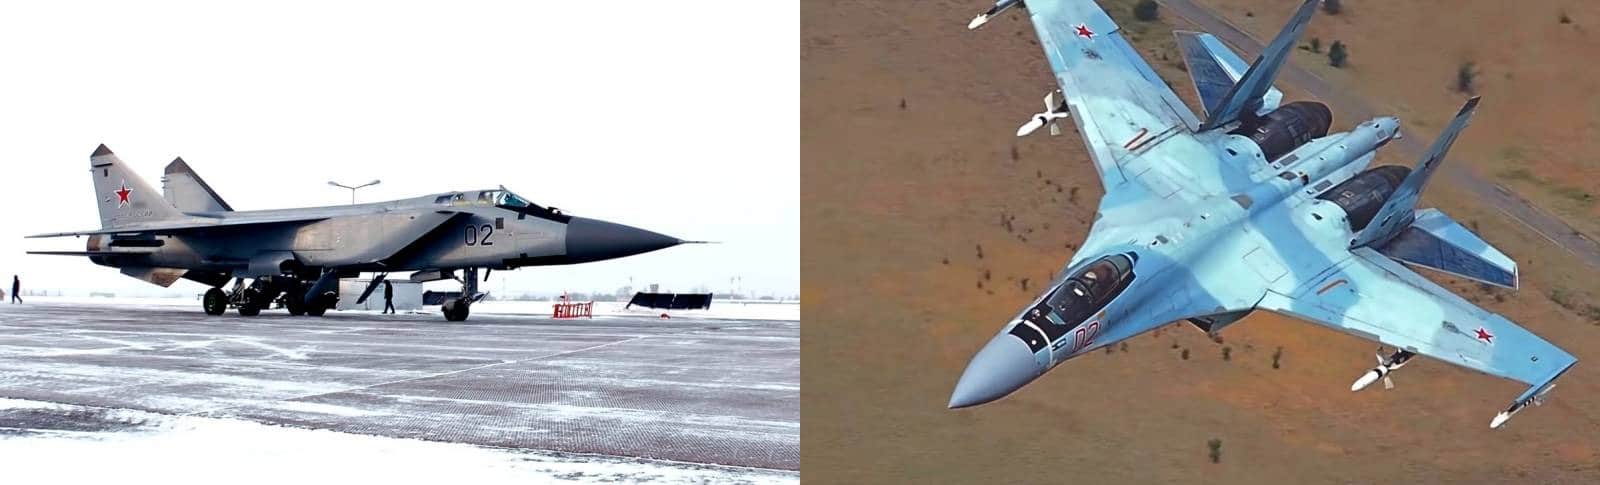 مقارنة غربية بين مقاتلتي MiG-31BM و Su-35 الروسيتين أيهما الأفضل ؟